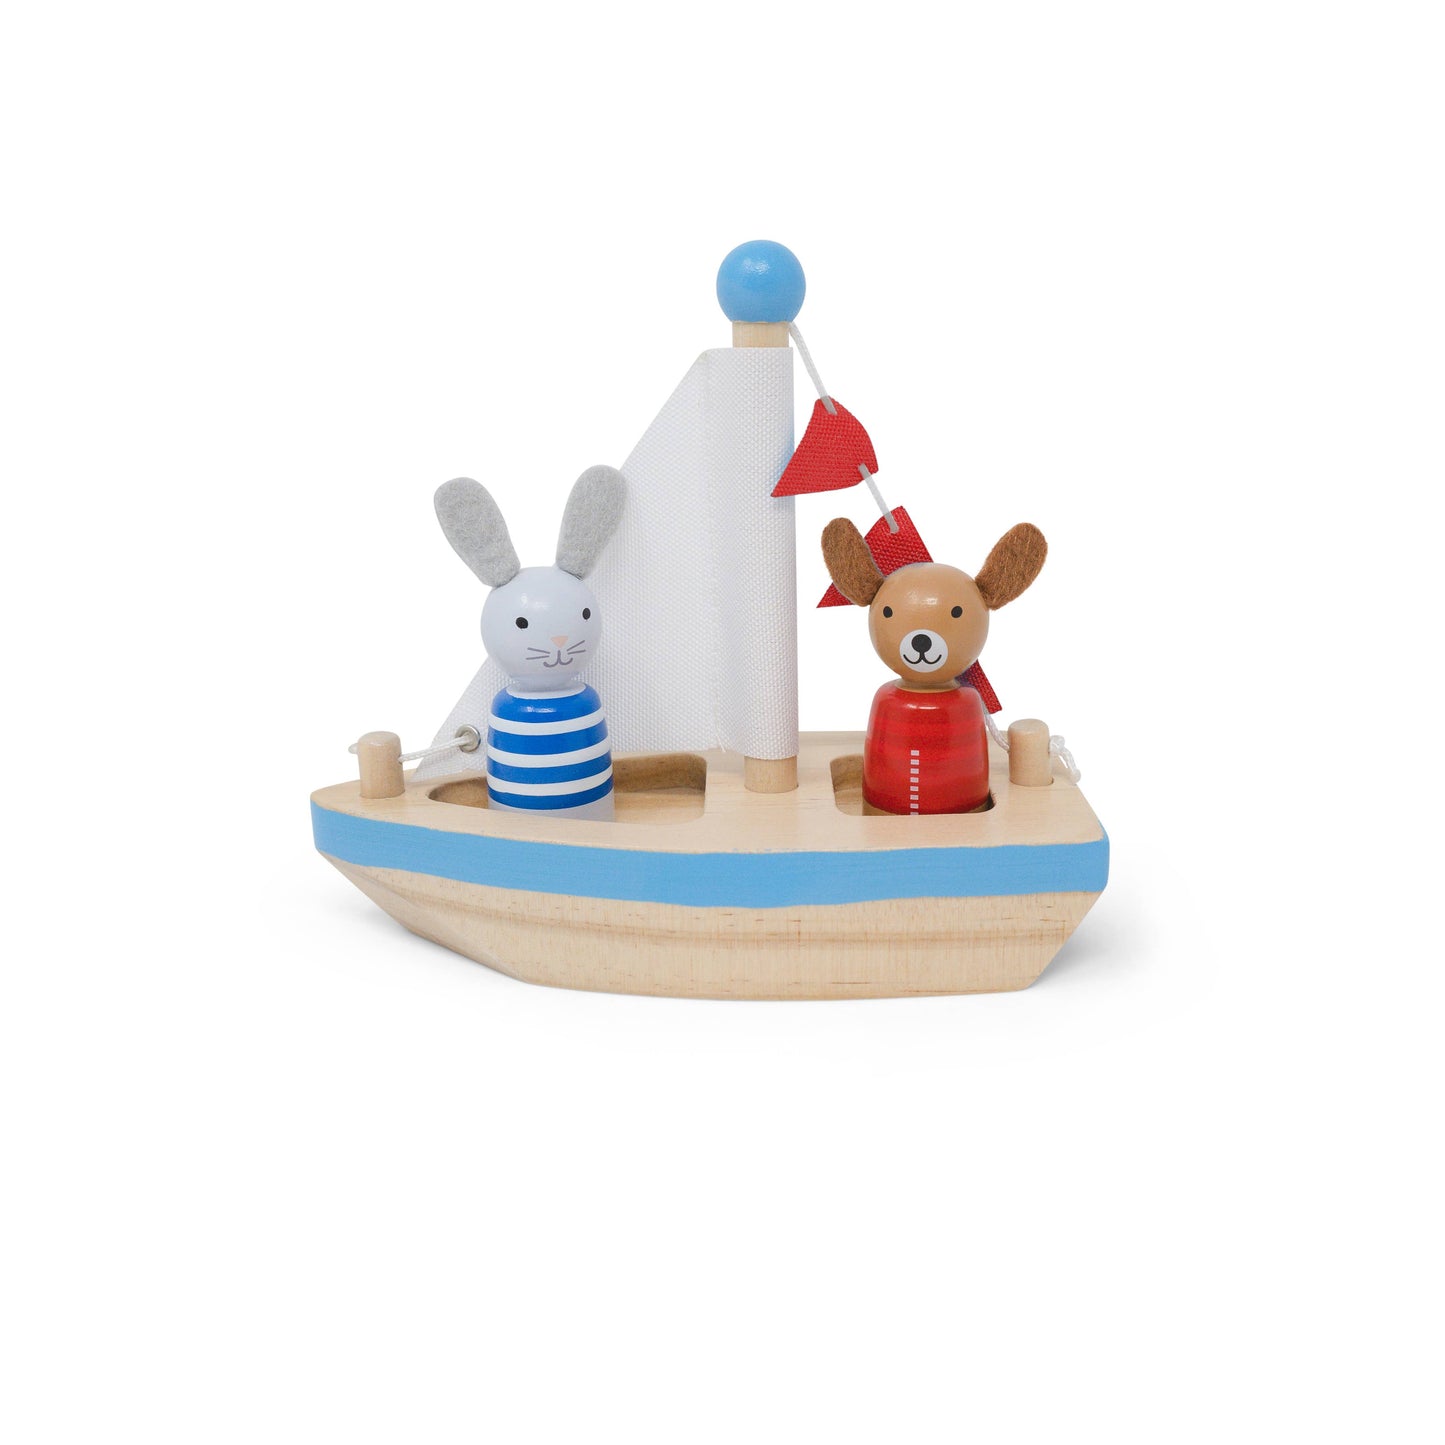 Boats & Buddies Bath Toy - Dog & Bunny